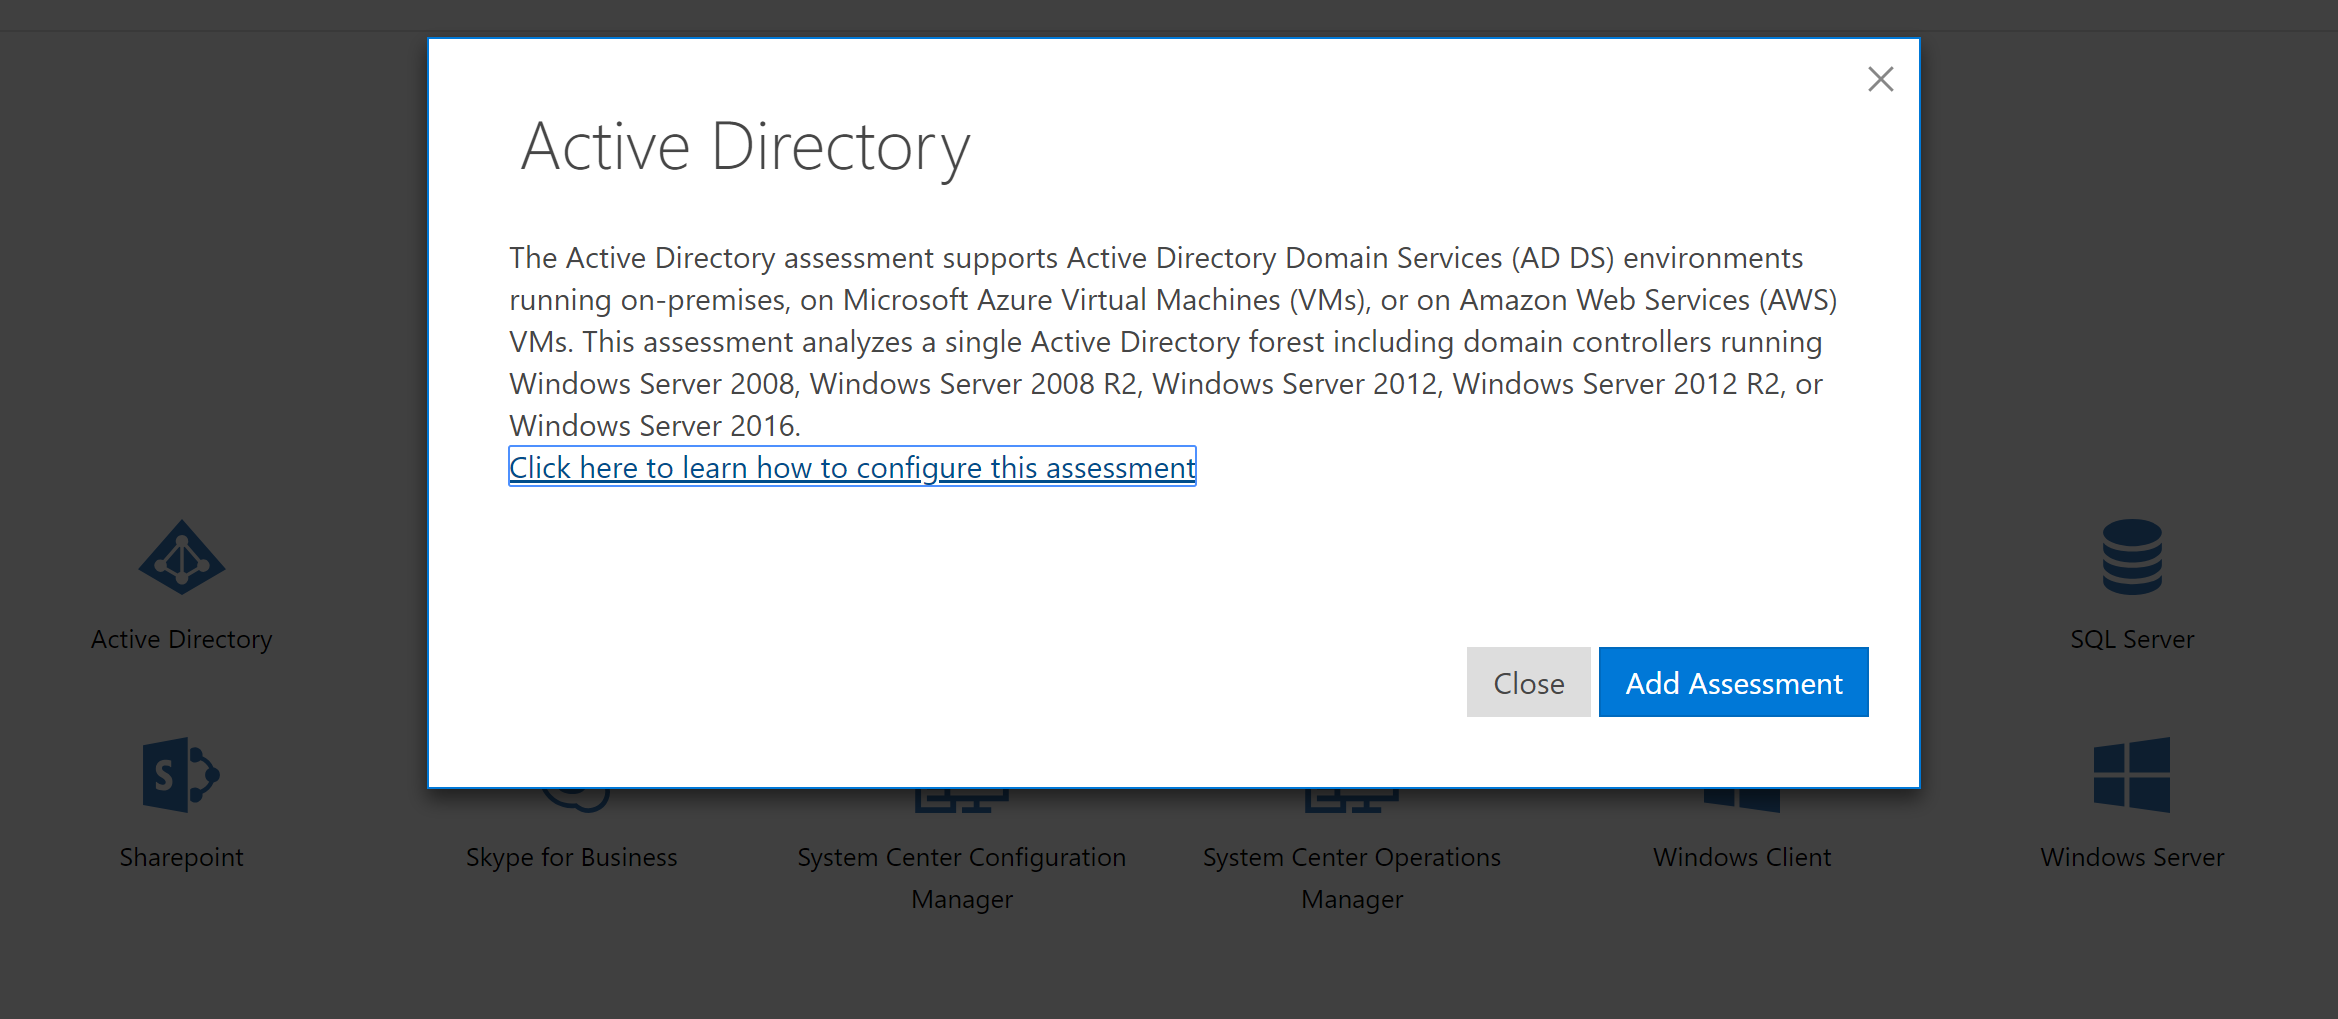 Active Directory Assessment description.